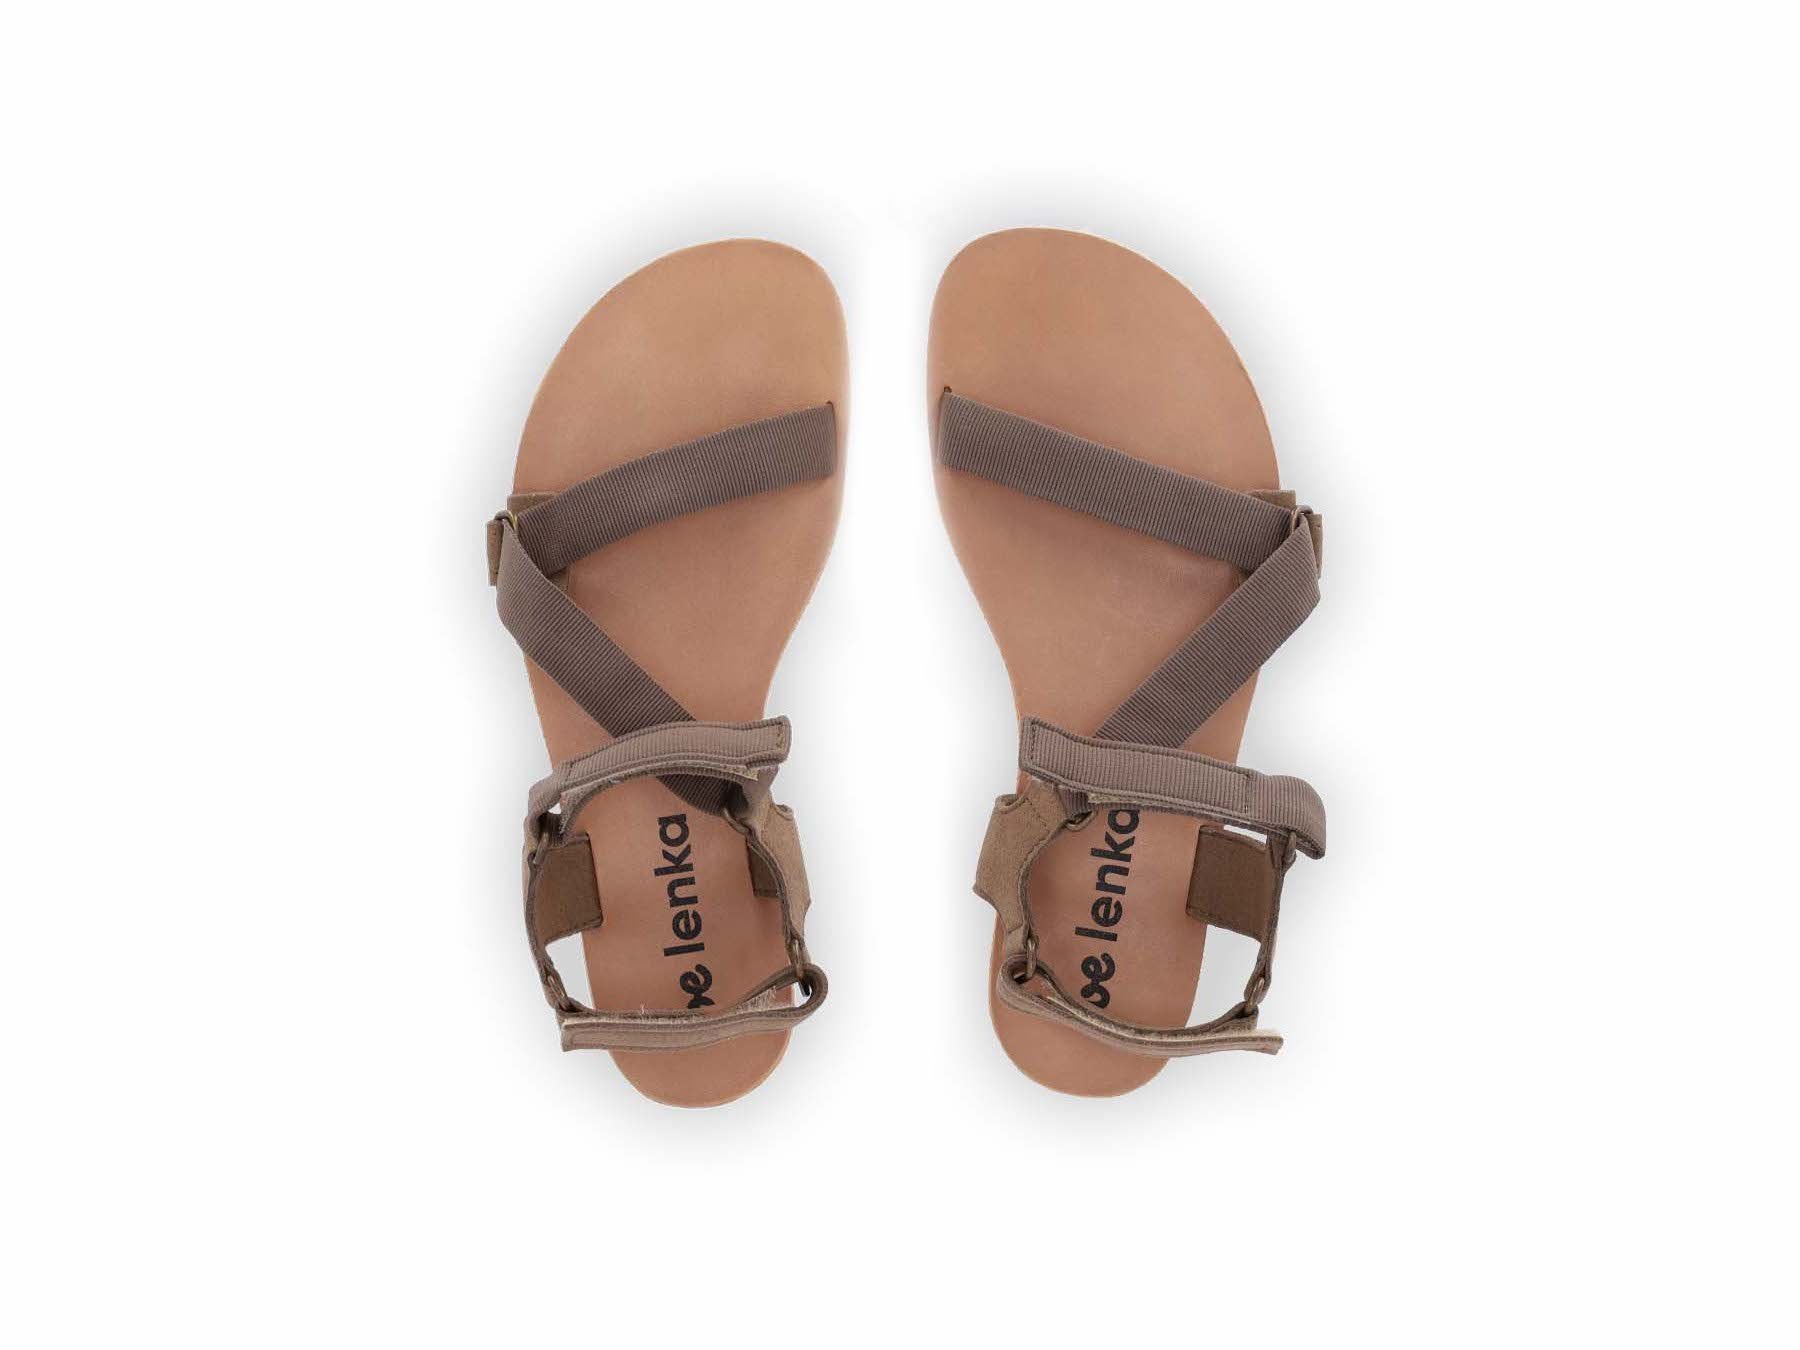 Barefoot Sandals - Be Lenka Flexi - Olive Green | Be Lenka